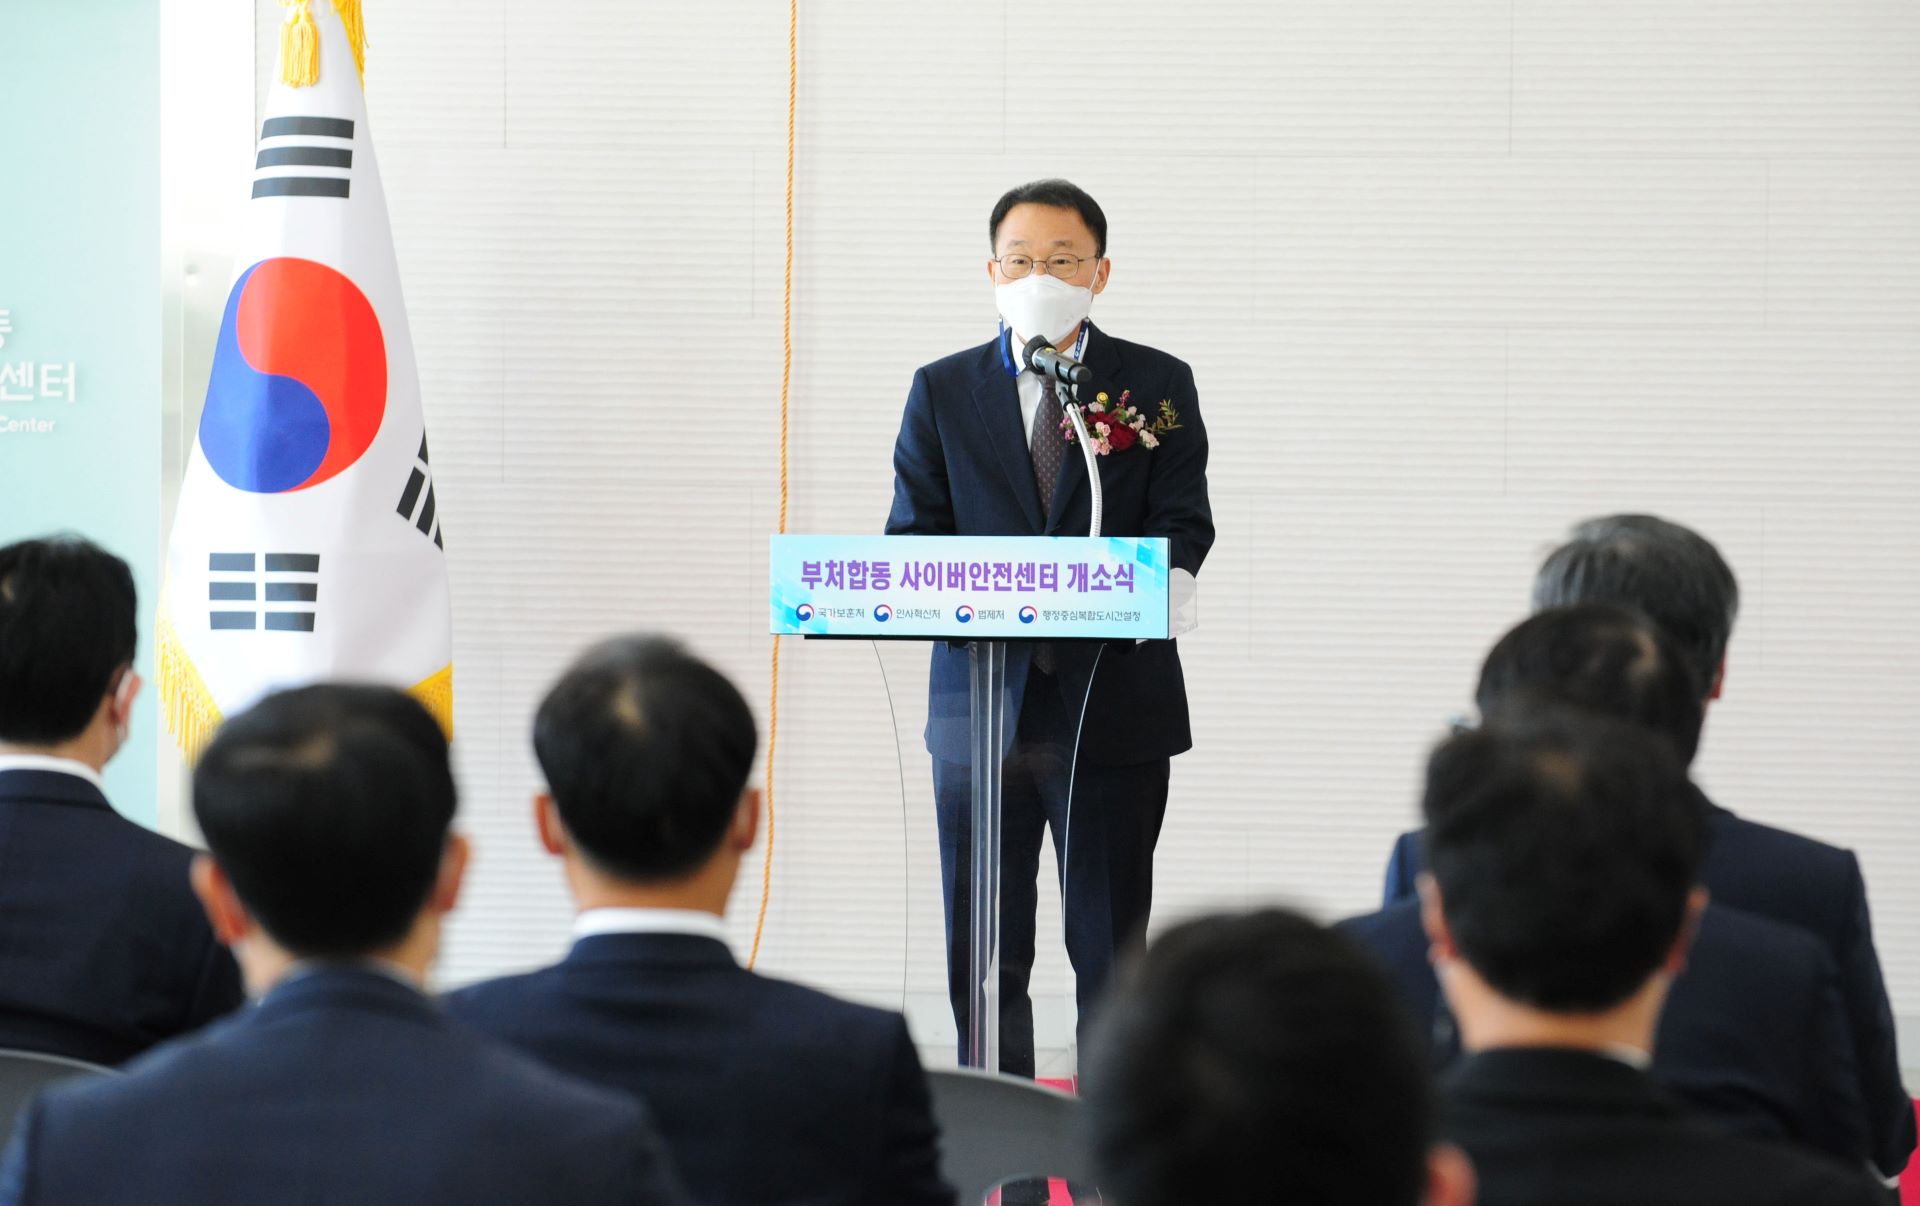 김우호 인사혁신처장이 28일 정부세종컨벤션센터 홍보동에 개소한 '부처 합동 사이버안전센터 개소식'에서 기념사를 하고 있는 사진